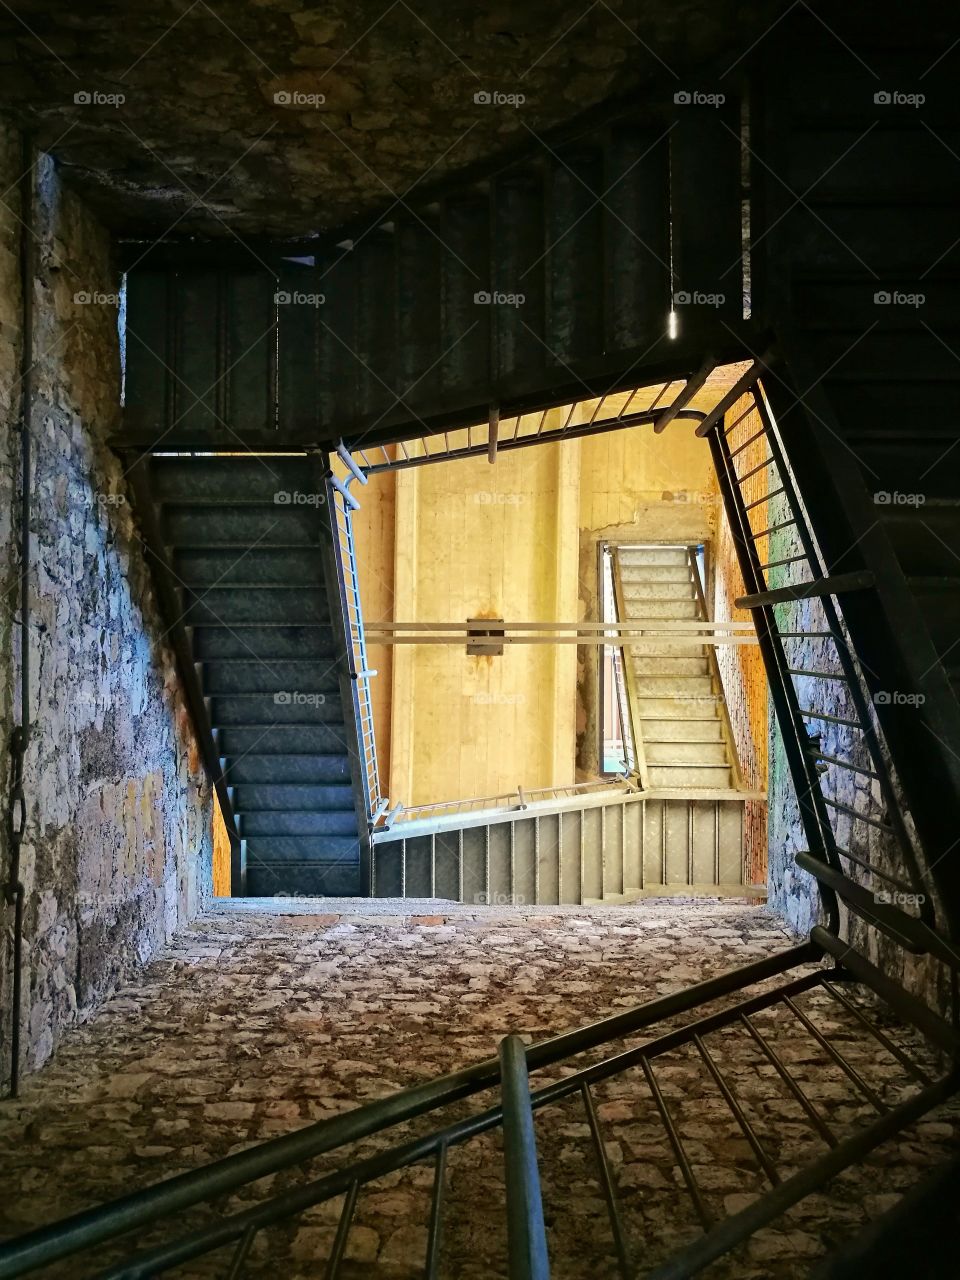 upstairs - downstairs